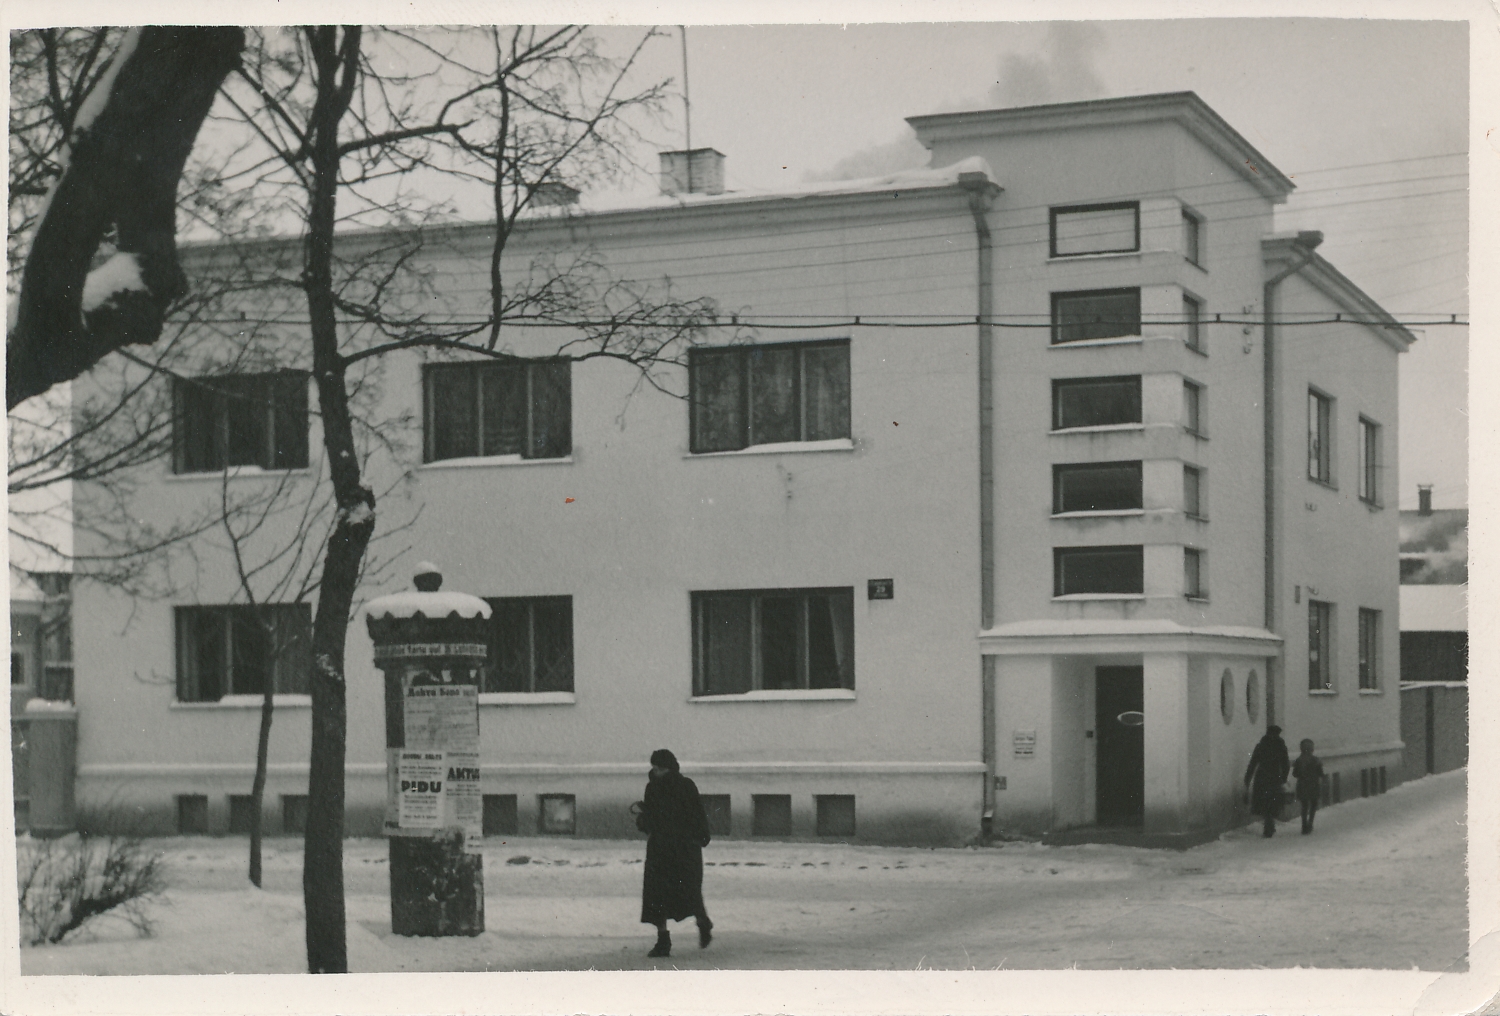 foto, Viljandi, advokaat Tiko maja, Jakobsoni tn 29, 1938, foto A. Kiisla